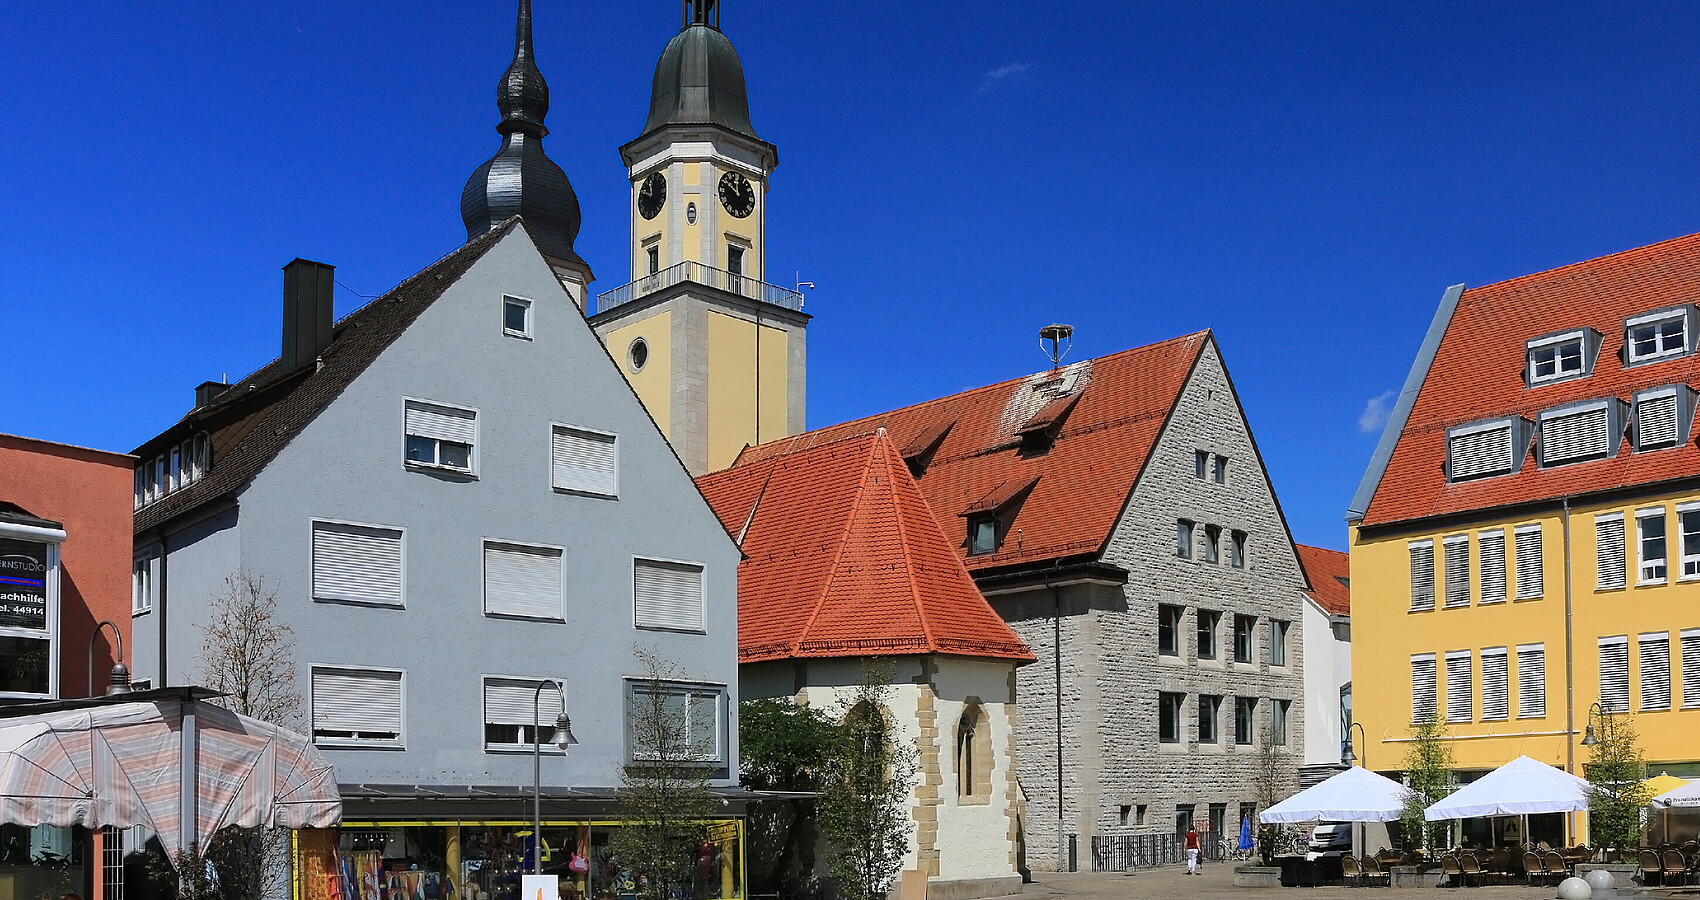 Bild zeigt Häuser und eine Kirchturm in Crailsheim